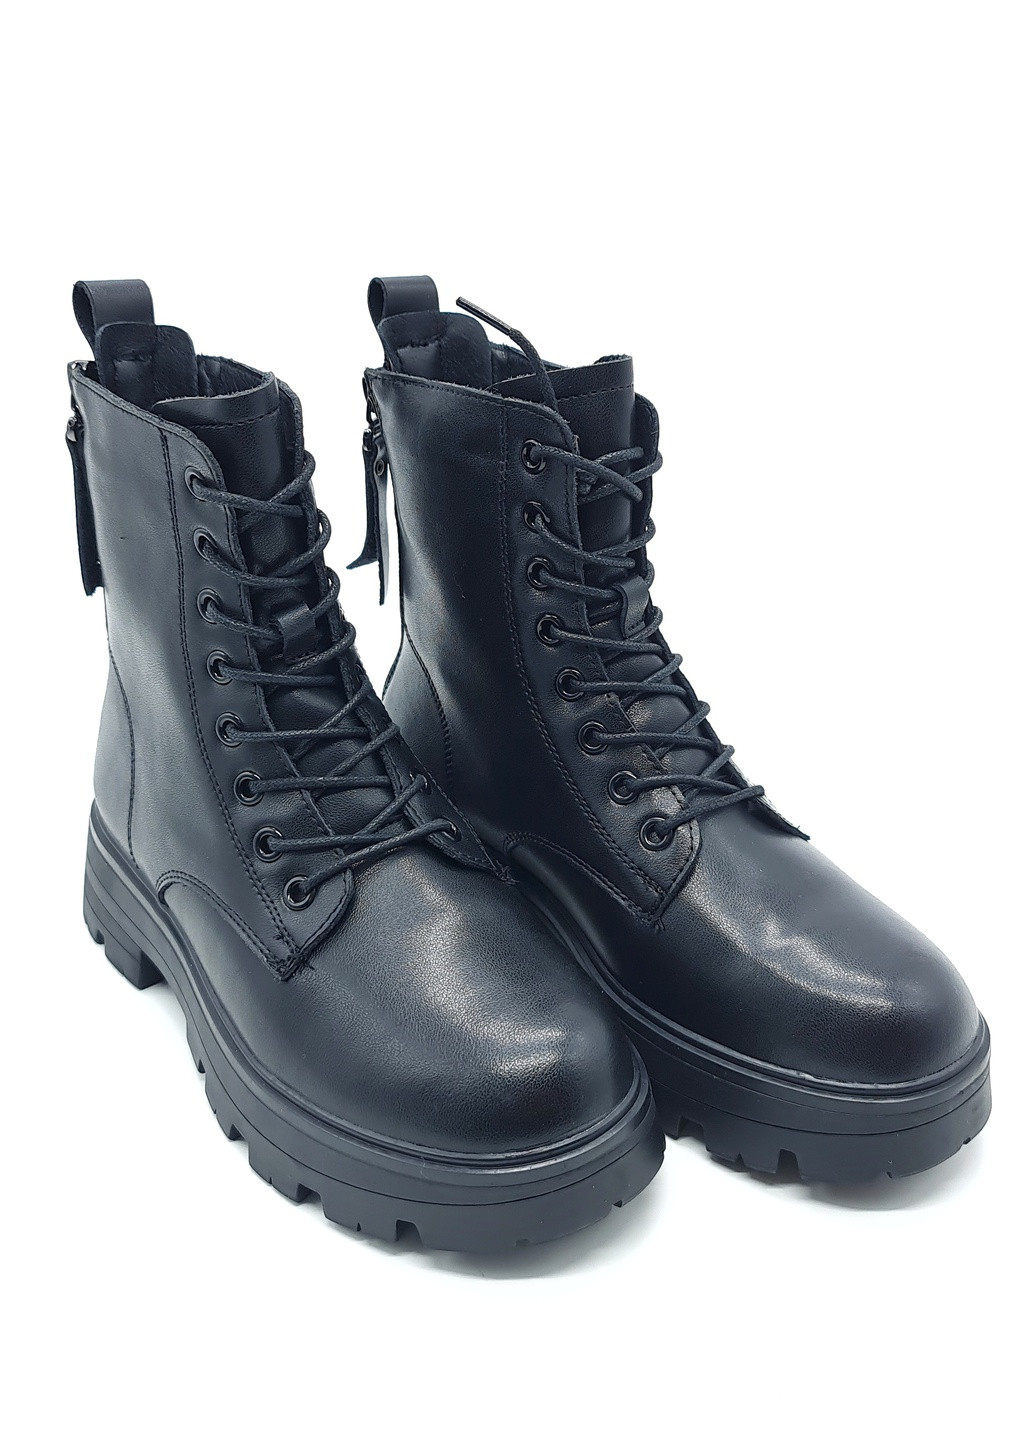 Жіночі черевики на овчині чорні шкіряні YA-19-4 230 мм (р) Yalasou (259299706)